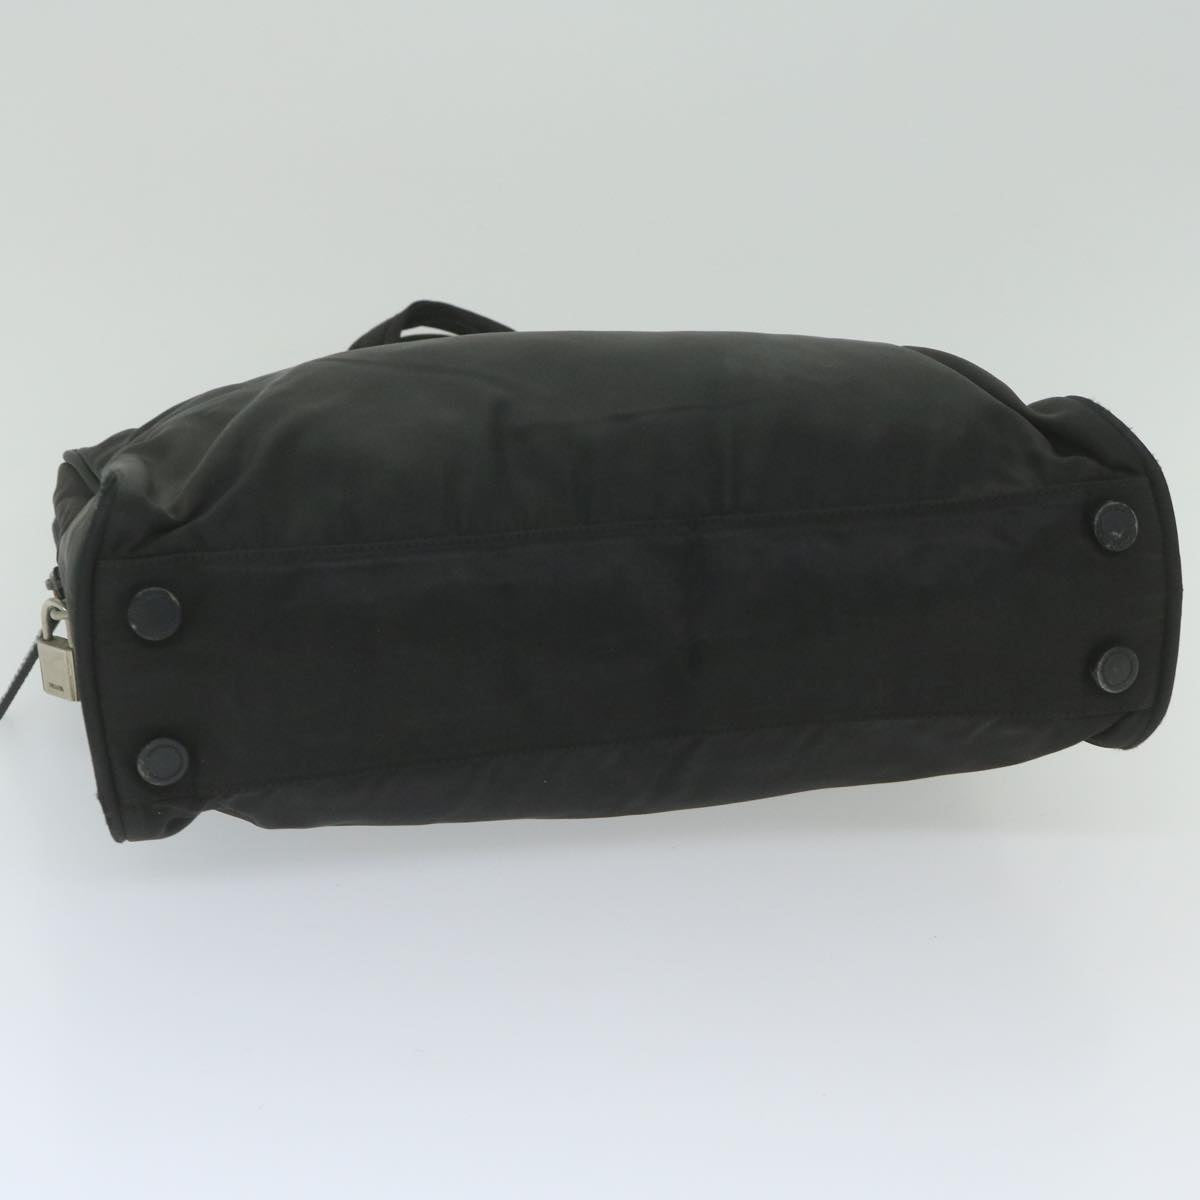 PRADA Hand Bag Nylon Black Auth ki3860